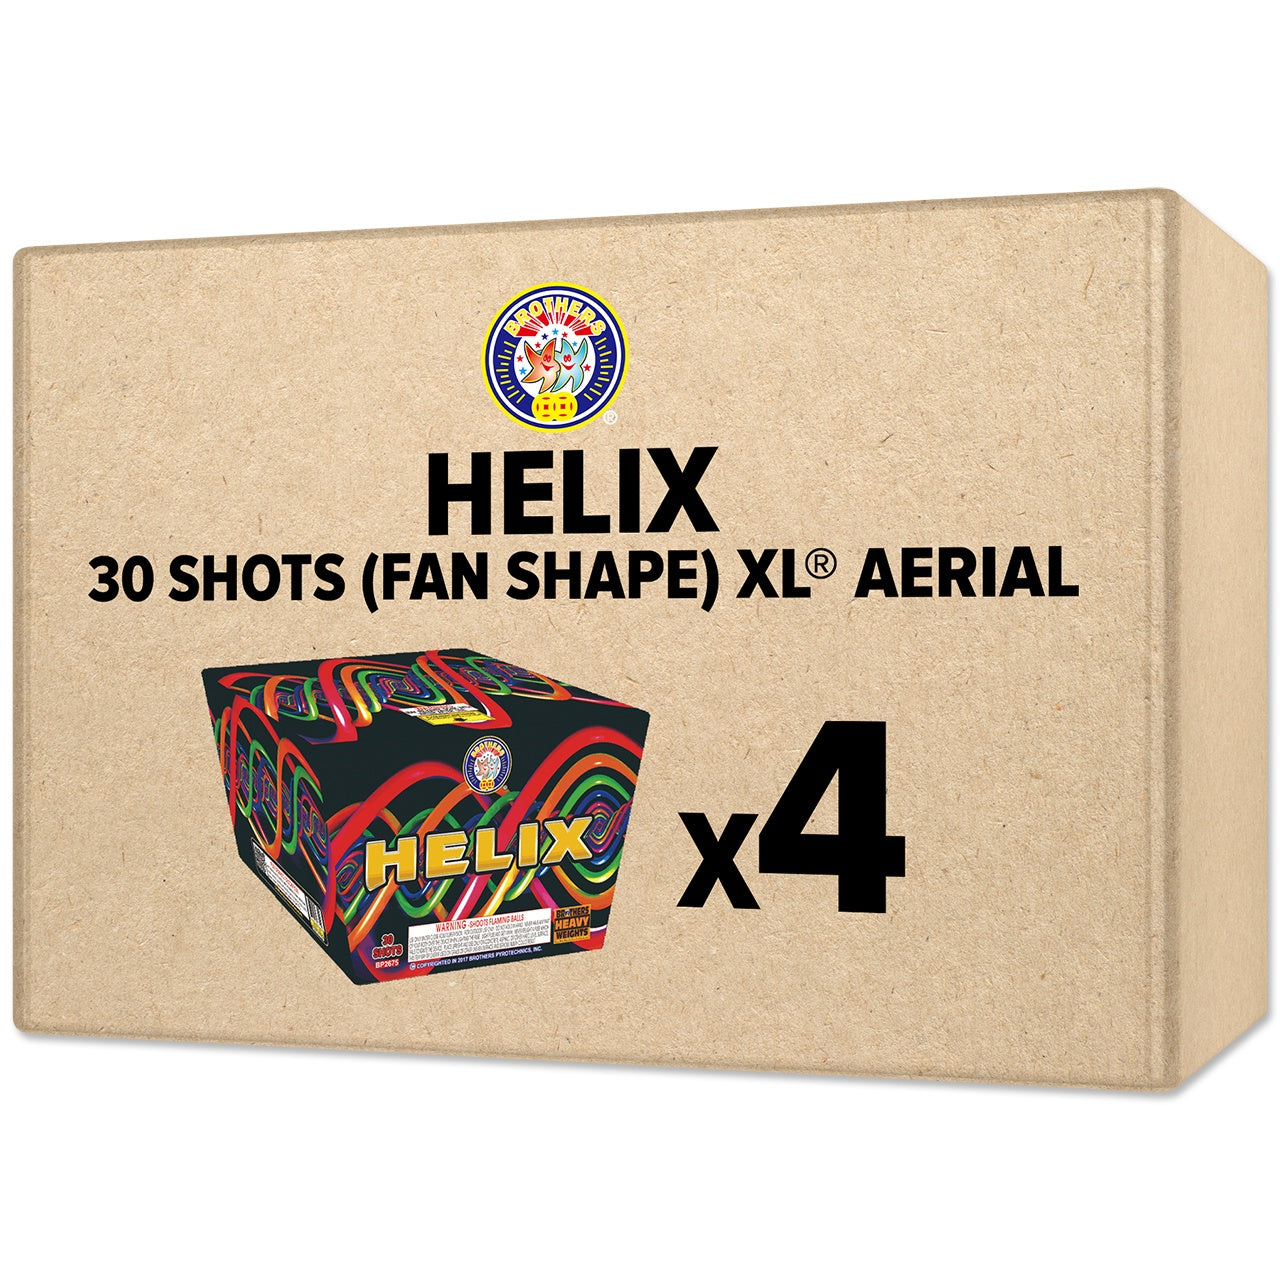 Helix 30 Shots (Fan Shape) XL Aerial